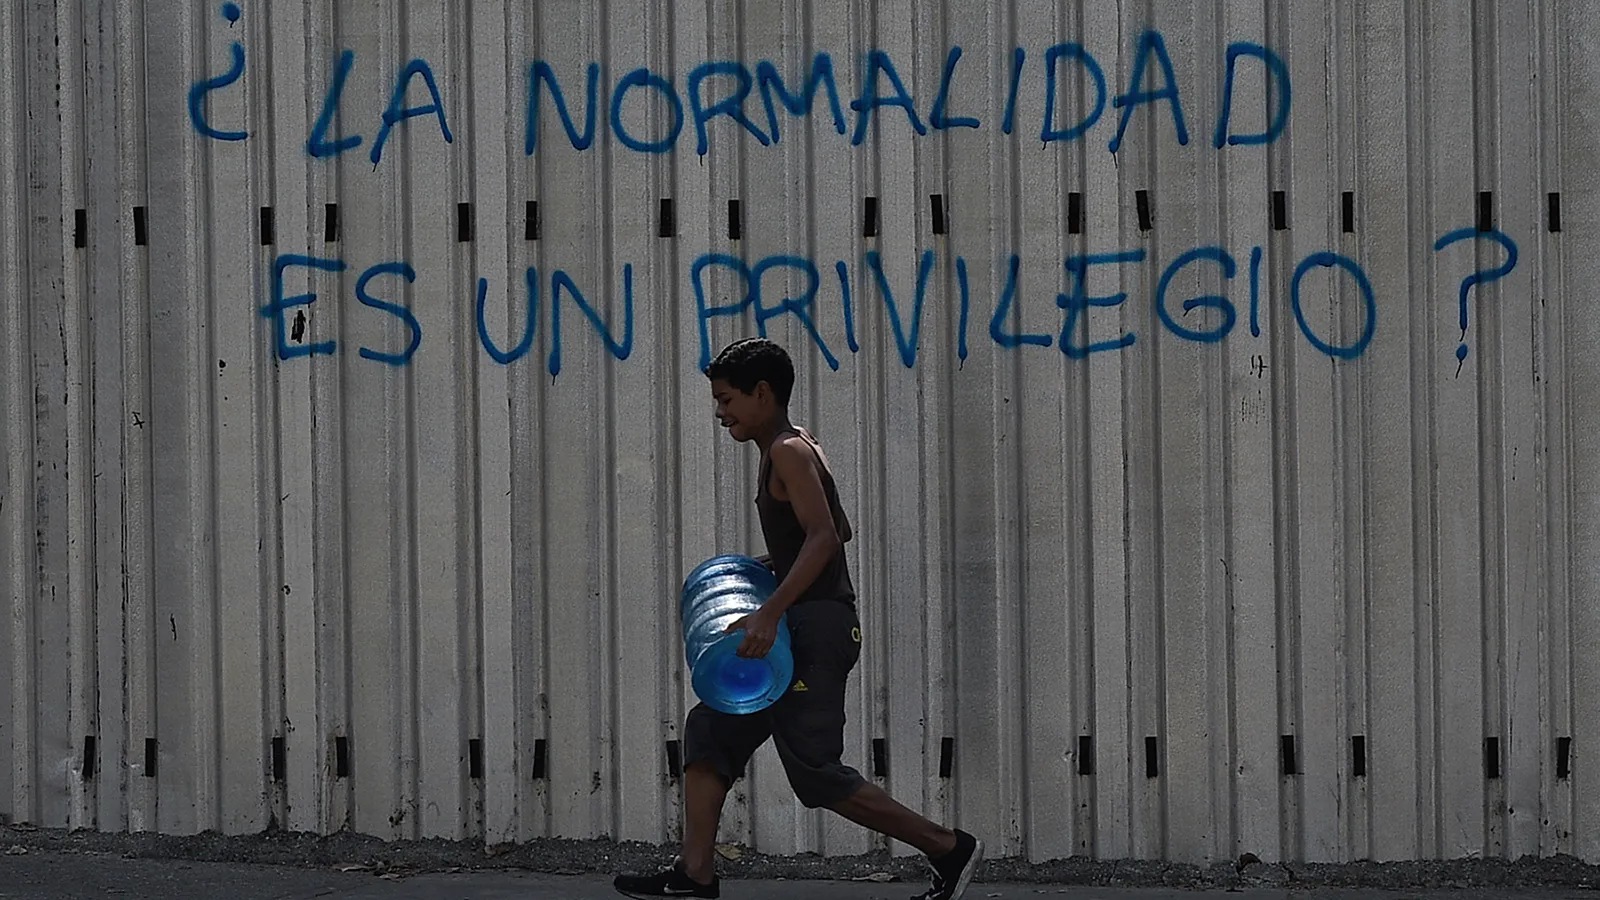 صبي يمر أمام جدارية كتب عليها “هل العدالة امتياز؟” في كراكاس في 31 آذار (مارس)